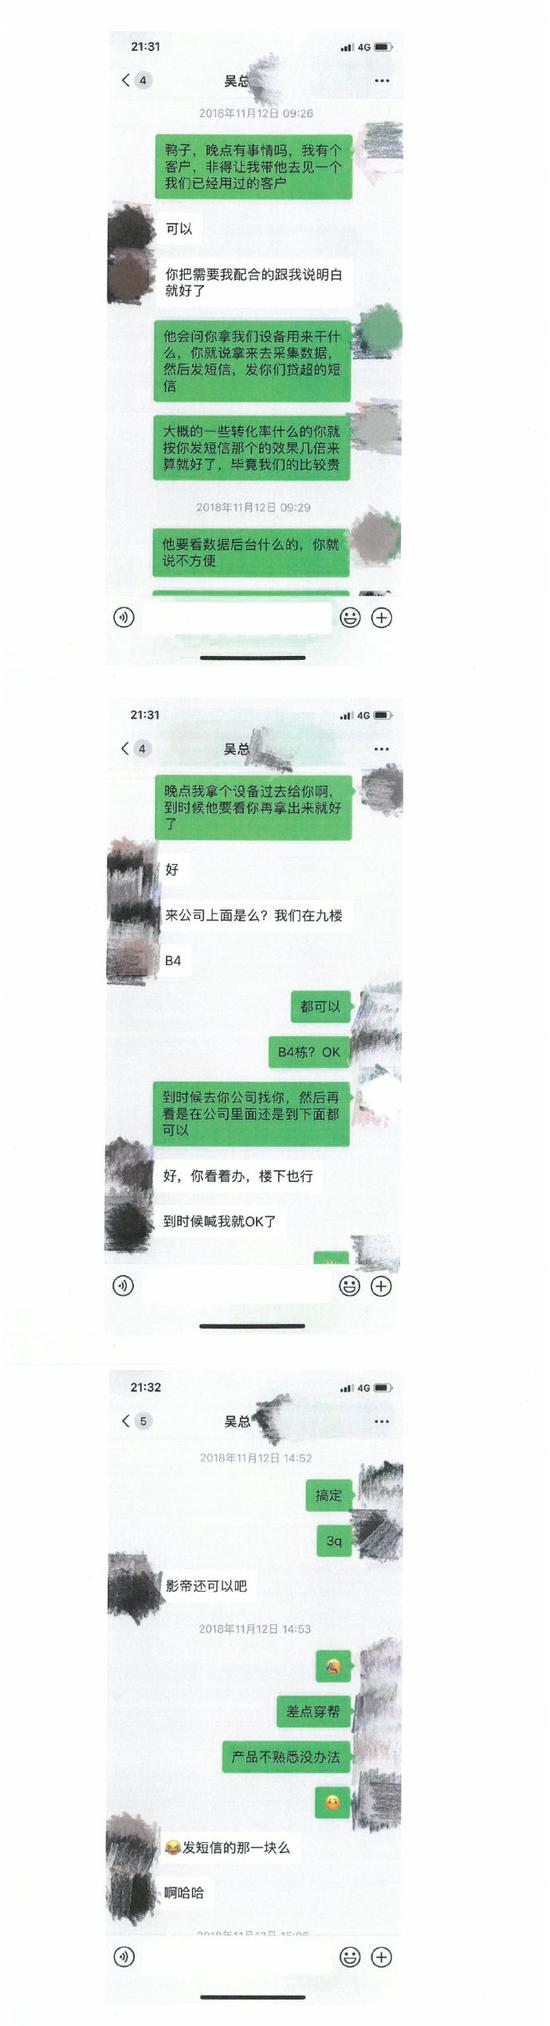 吴某某和李某某的对话截屏 图片来源：萨摩耶金服官方微博